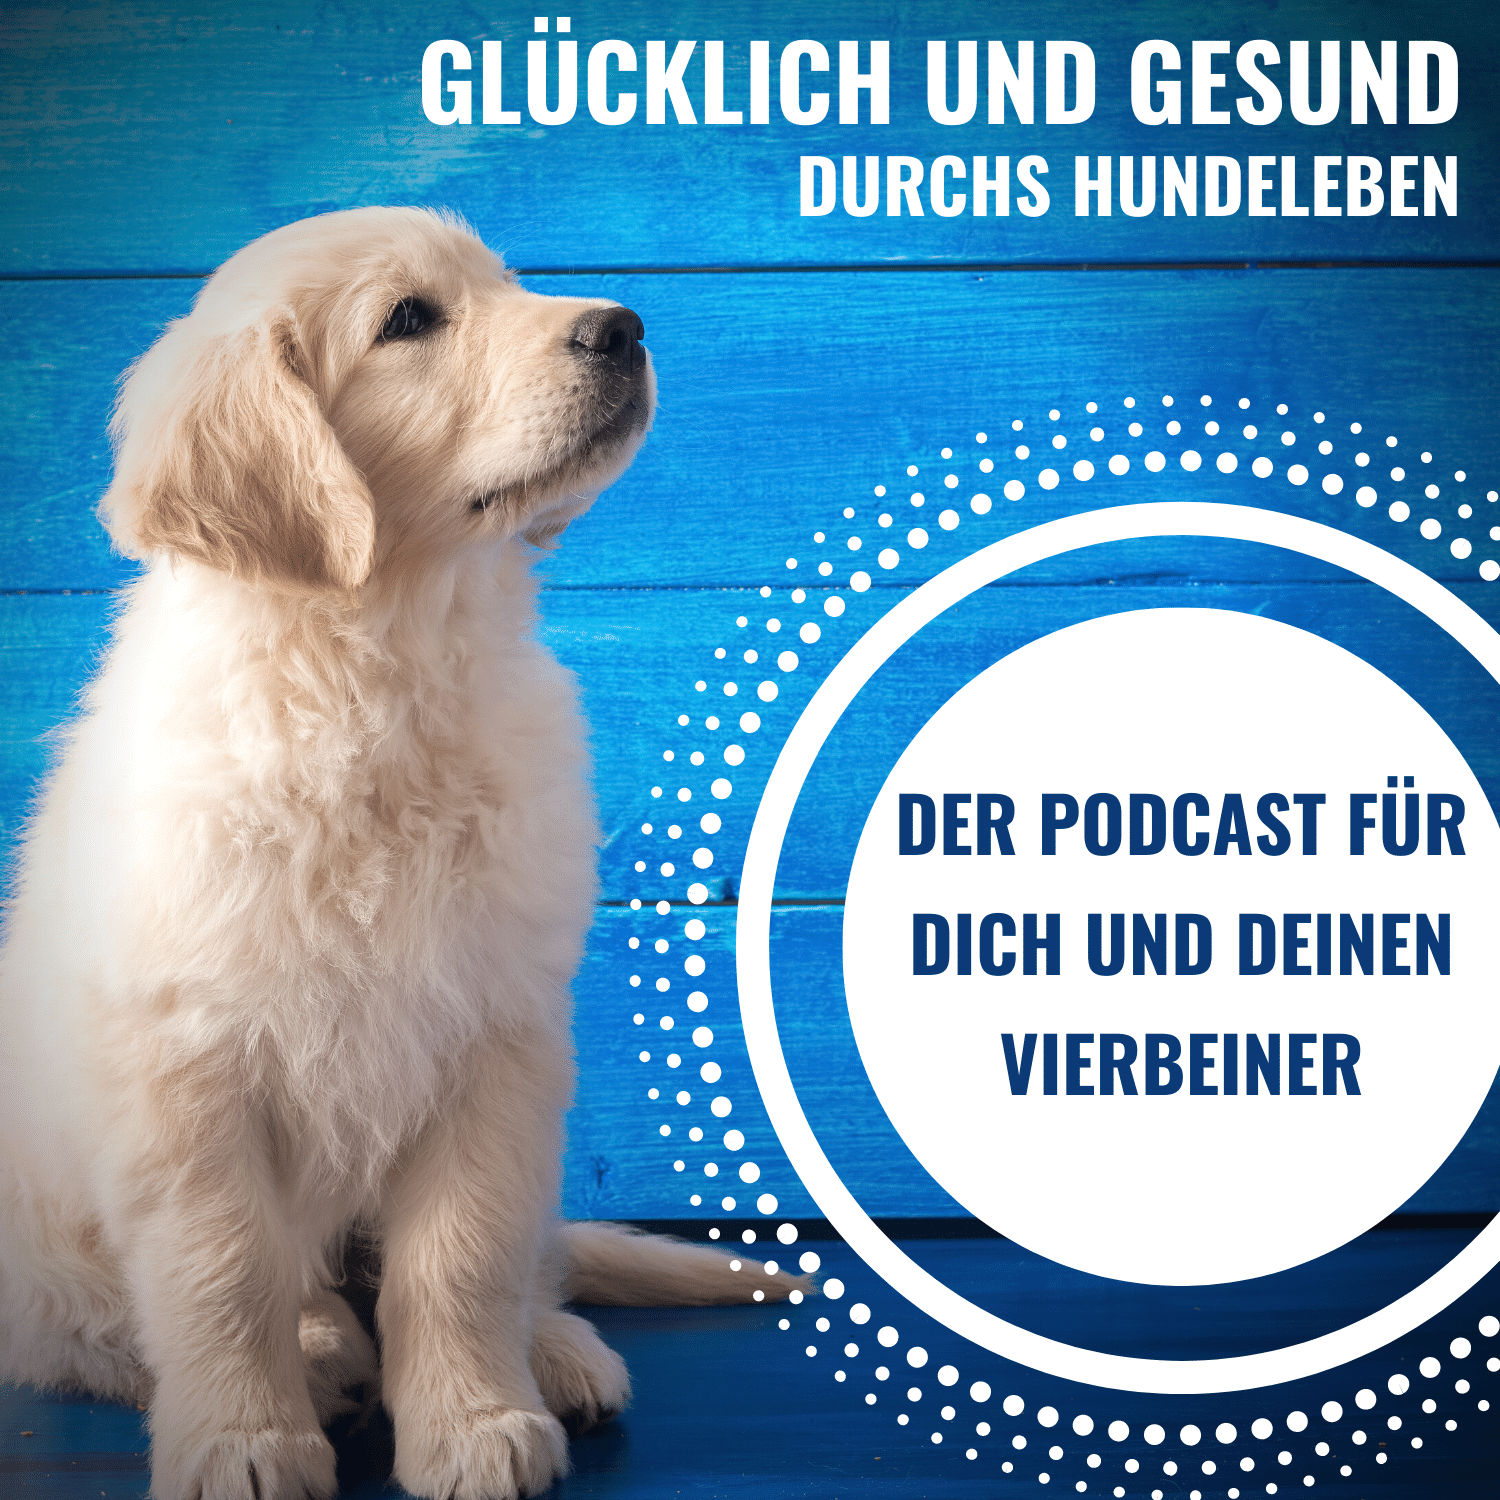 57 Leben mit Hund, Ratgeber für Hundehalter-Ideen